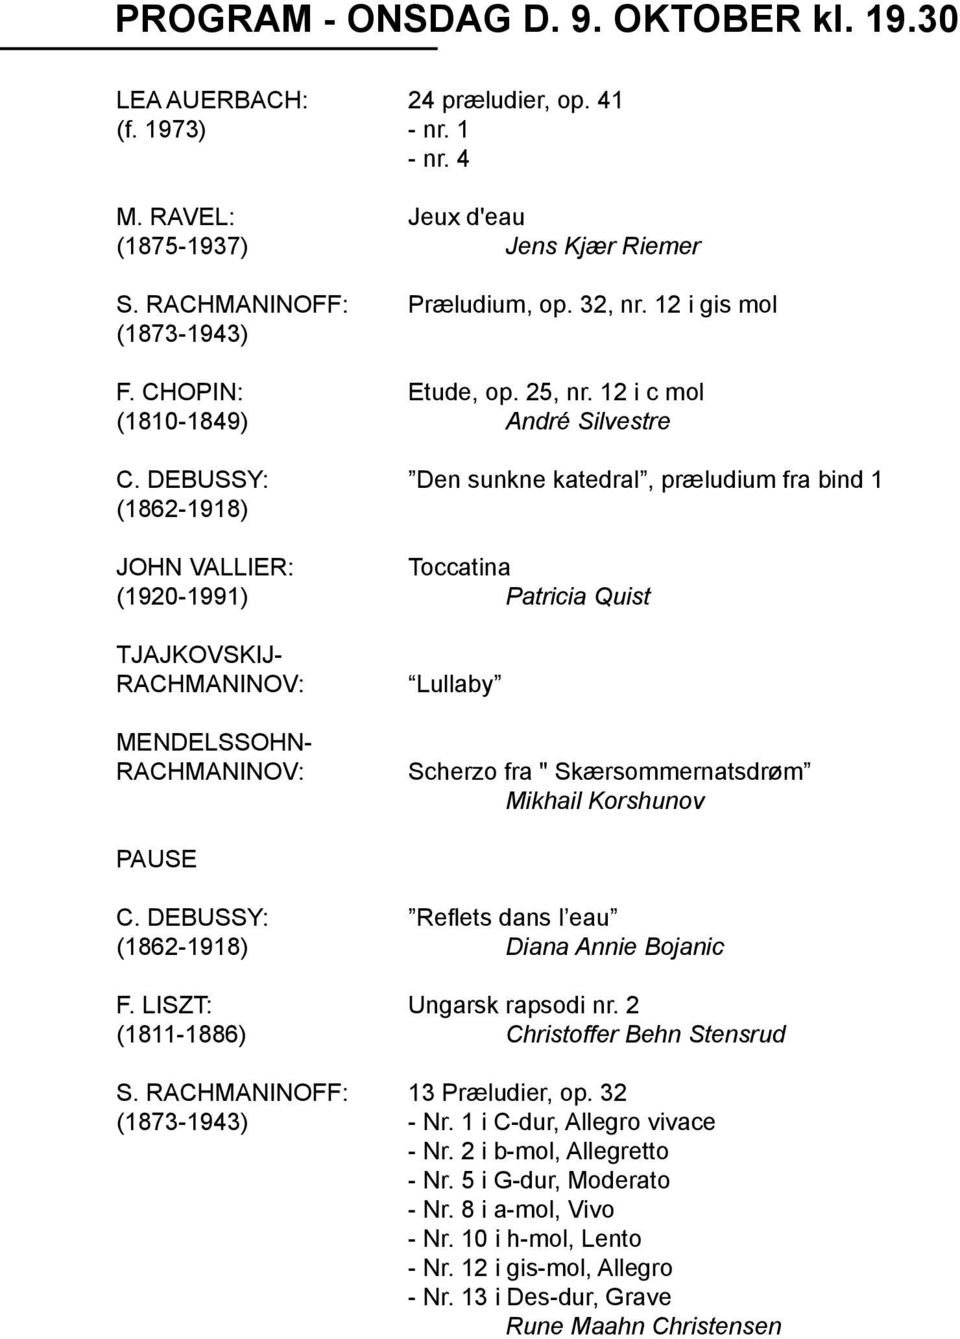 Debussy: Den sunkne katedral, præludium fra bind 1 (1862-1918) John Vallier: toccatina (1920-1991) Patricia Quist Tjajkovskij- Rachmaninov: Mendelssohn- Rachmaninov: Lullaby Scherzo fra "